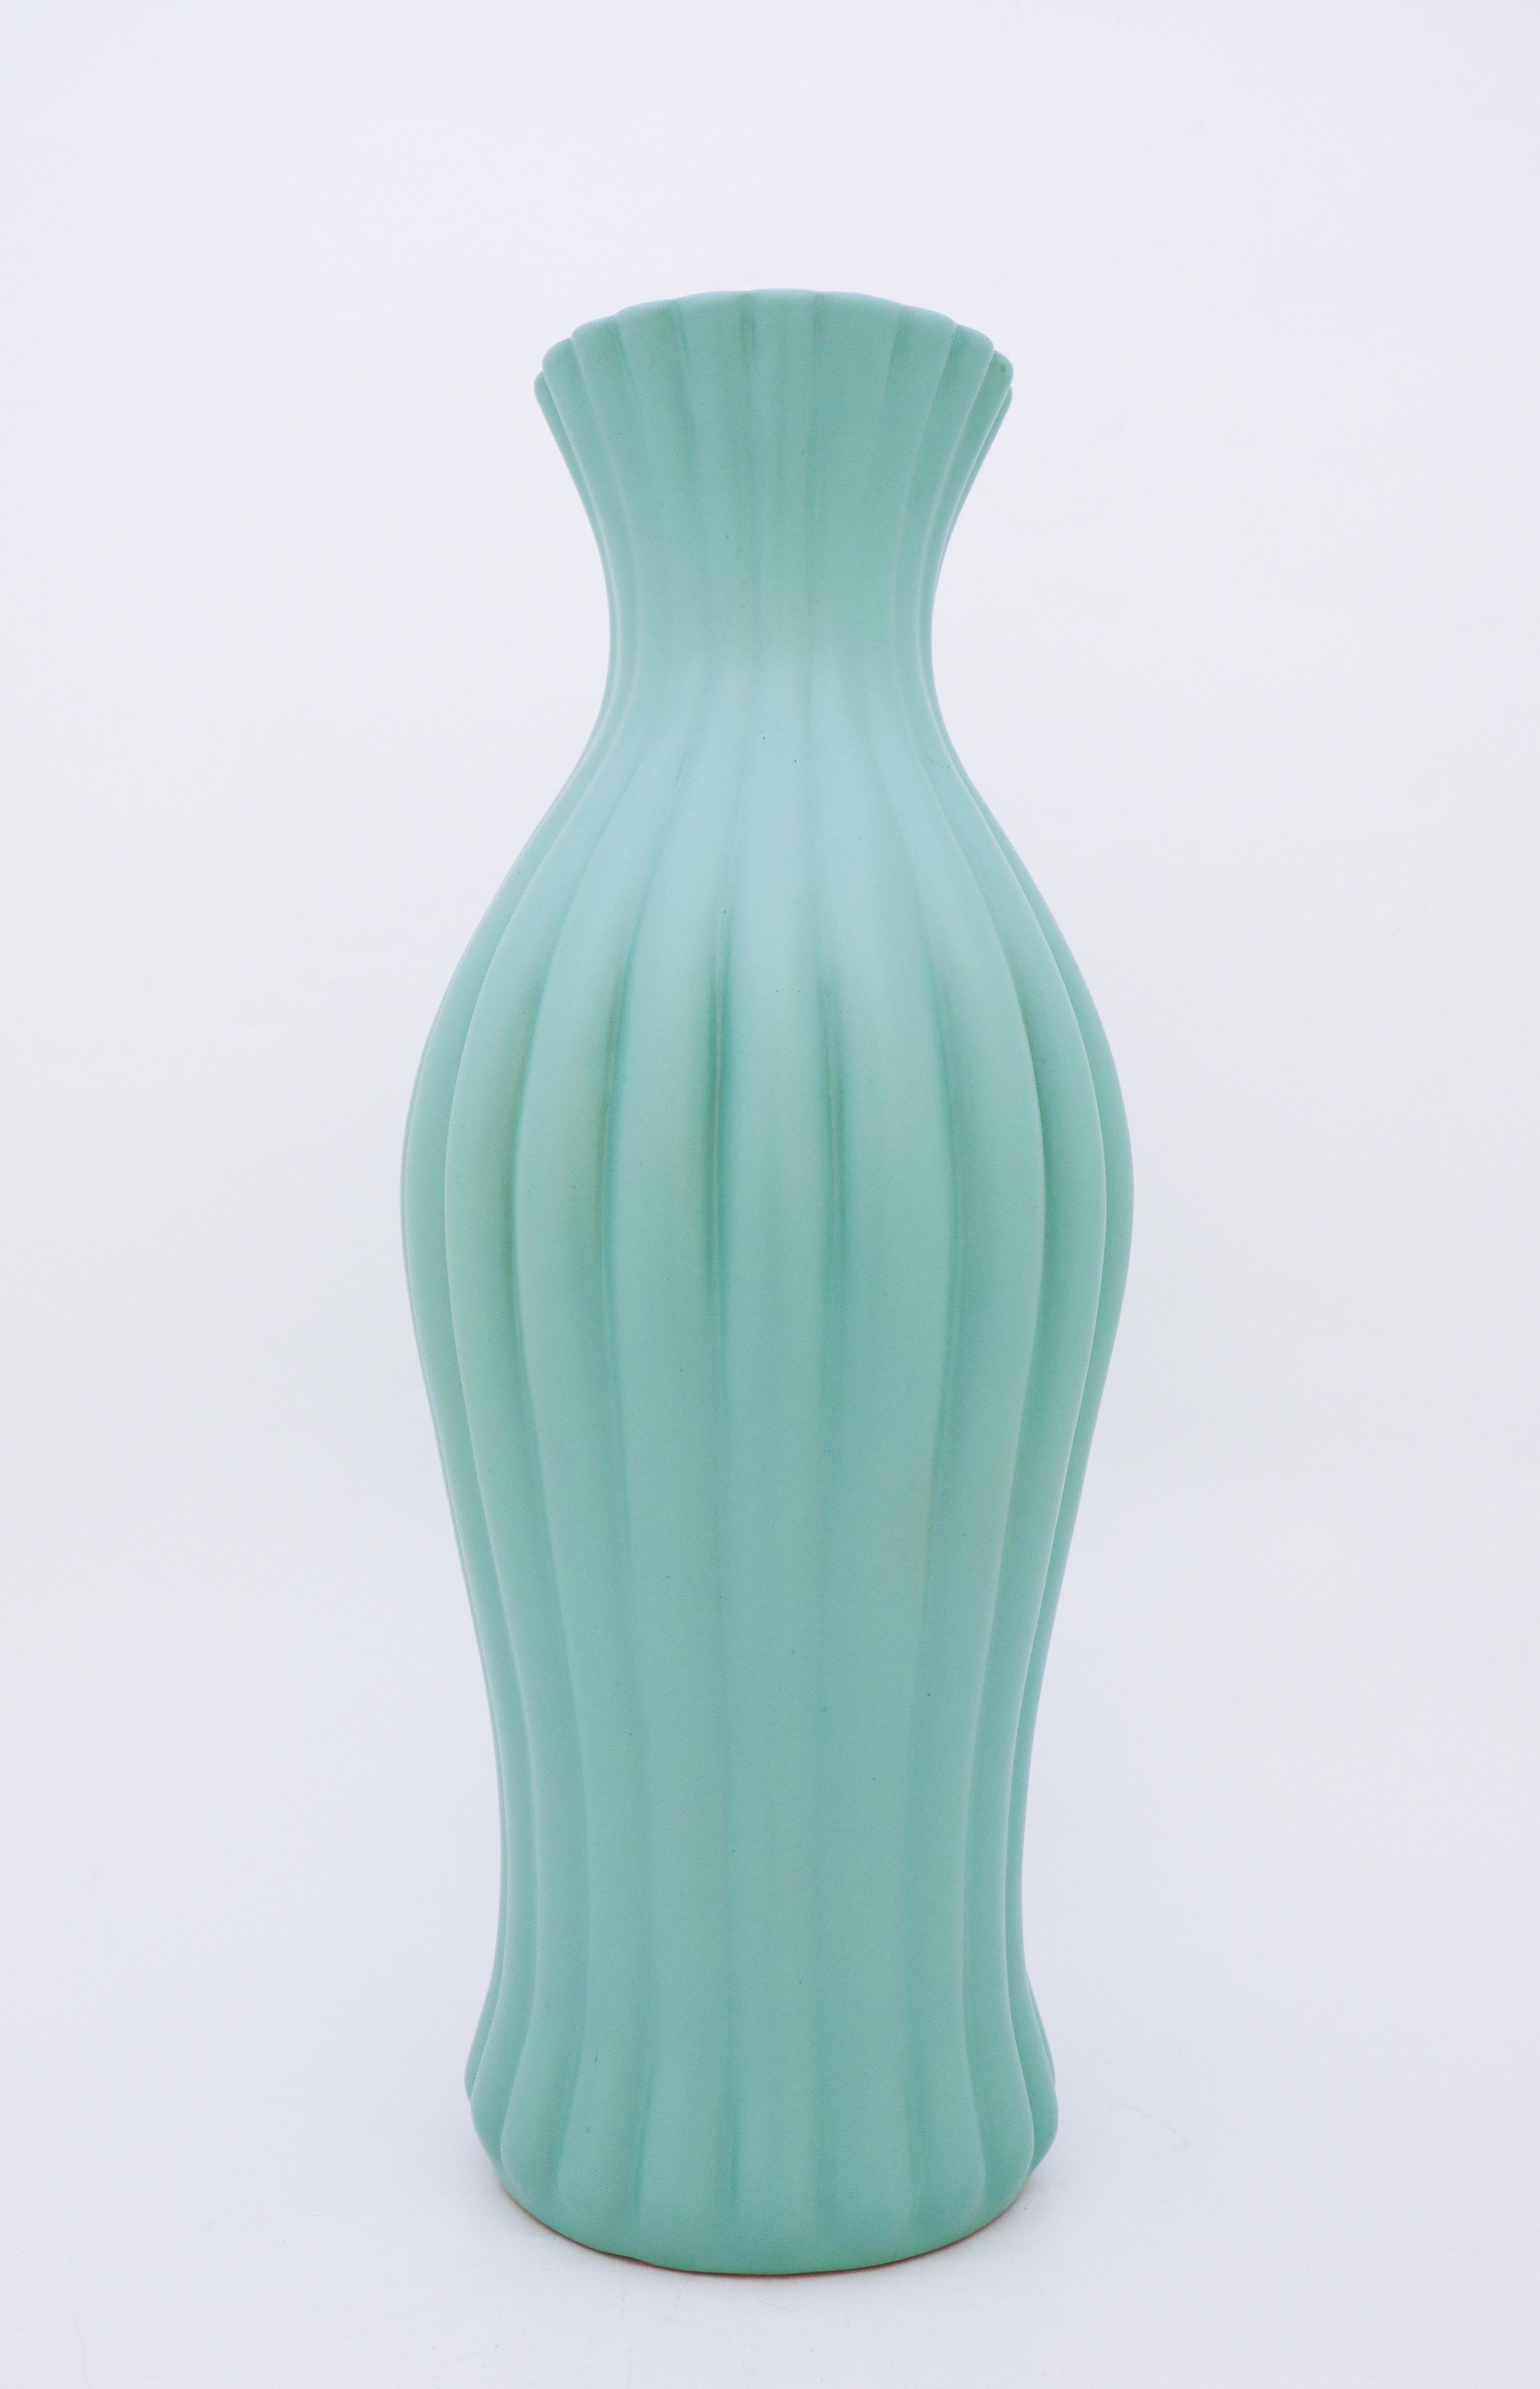 large turquoise vase